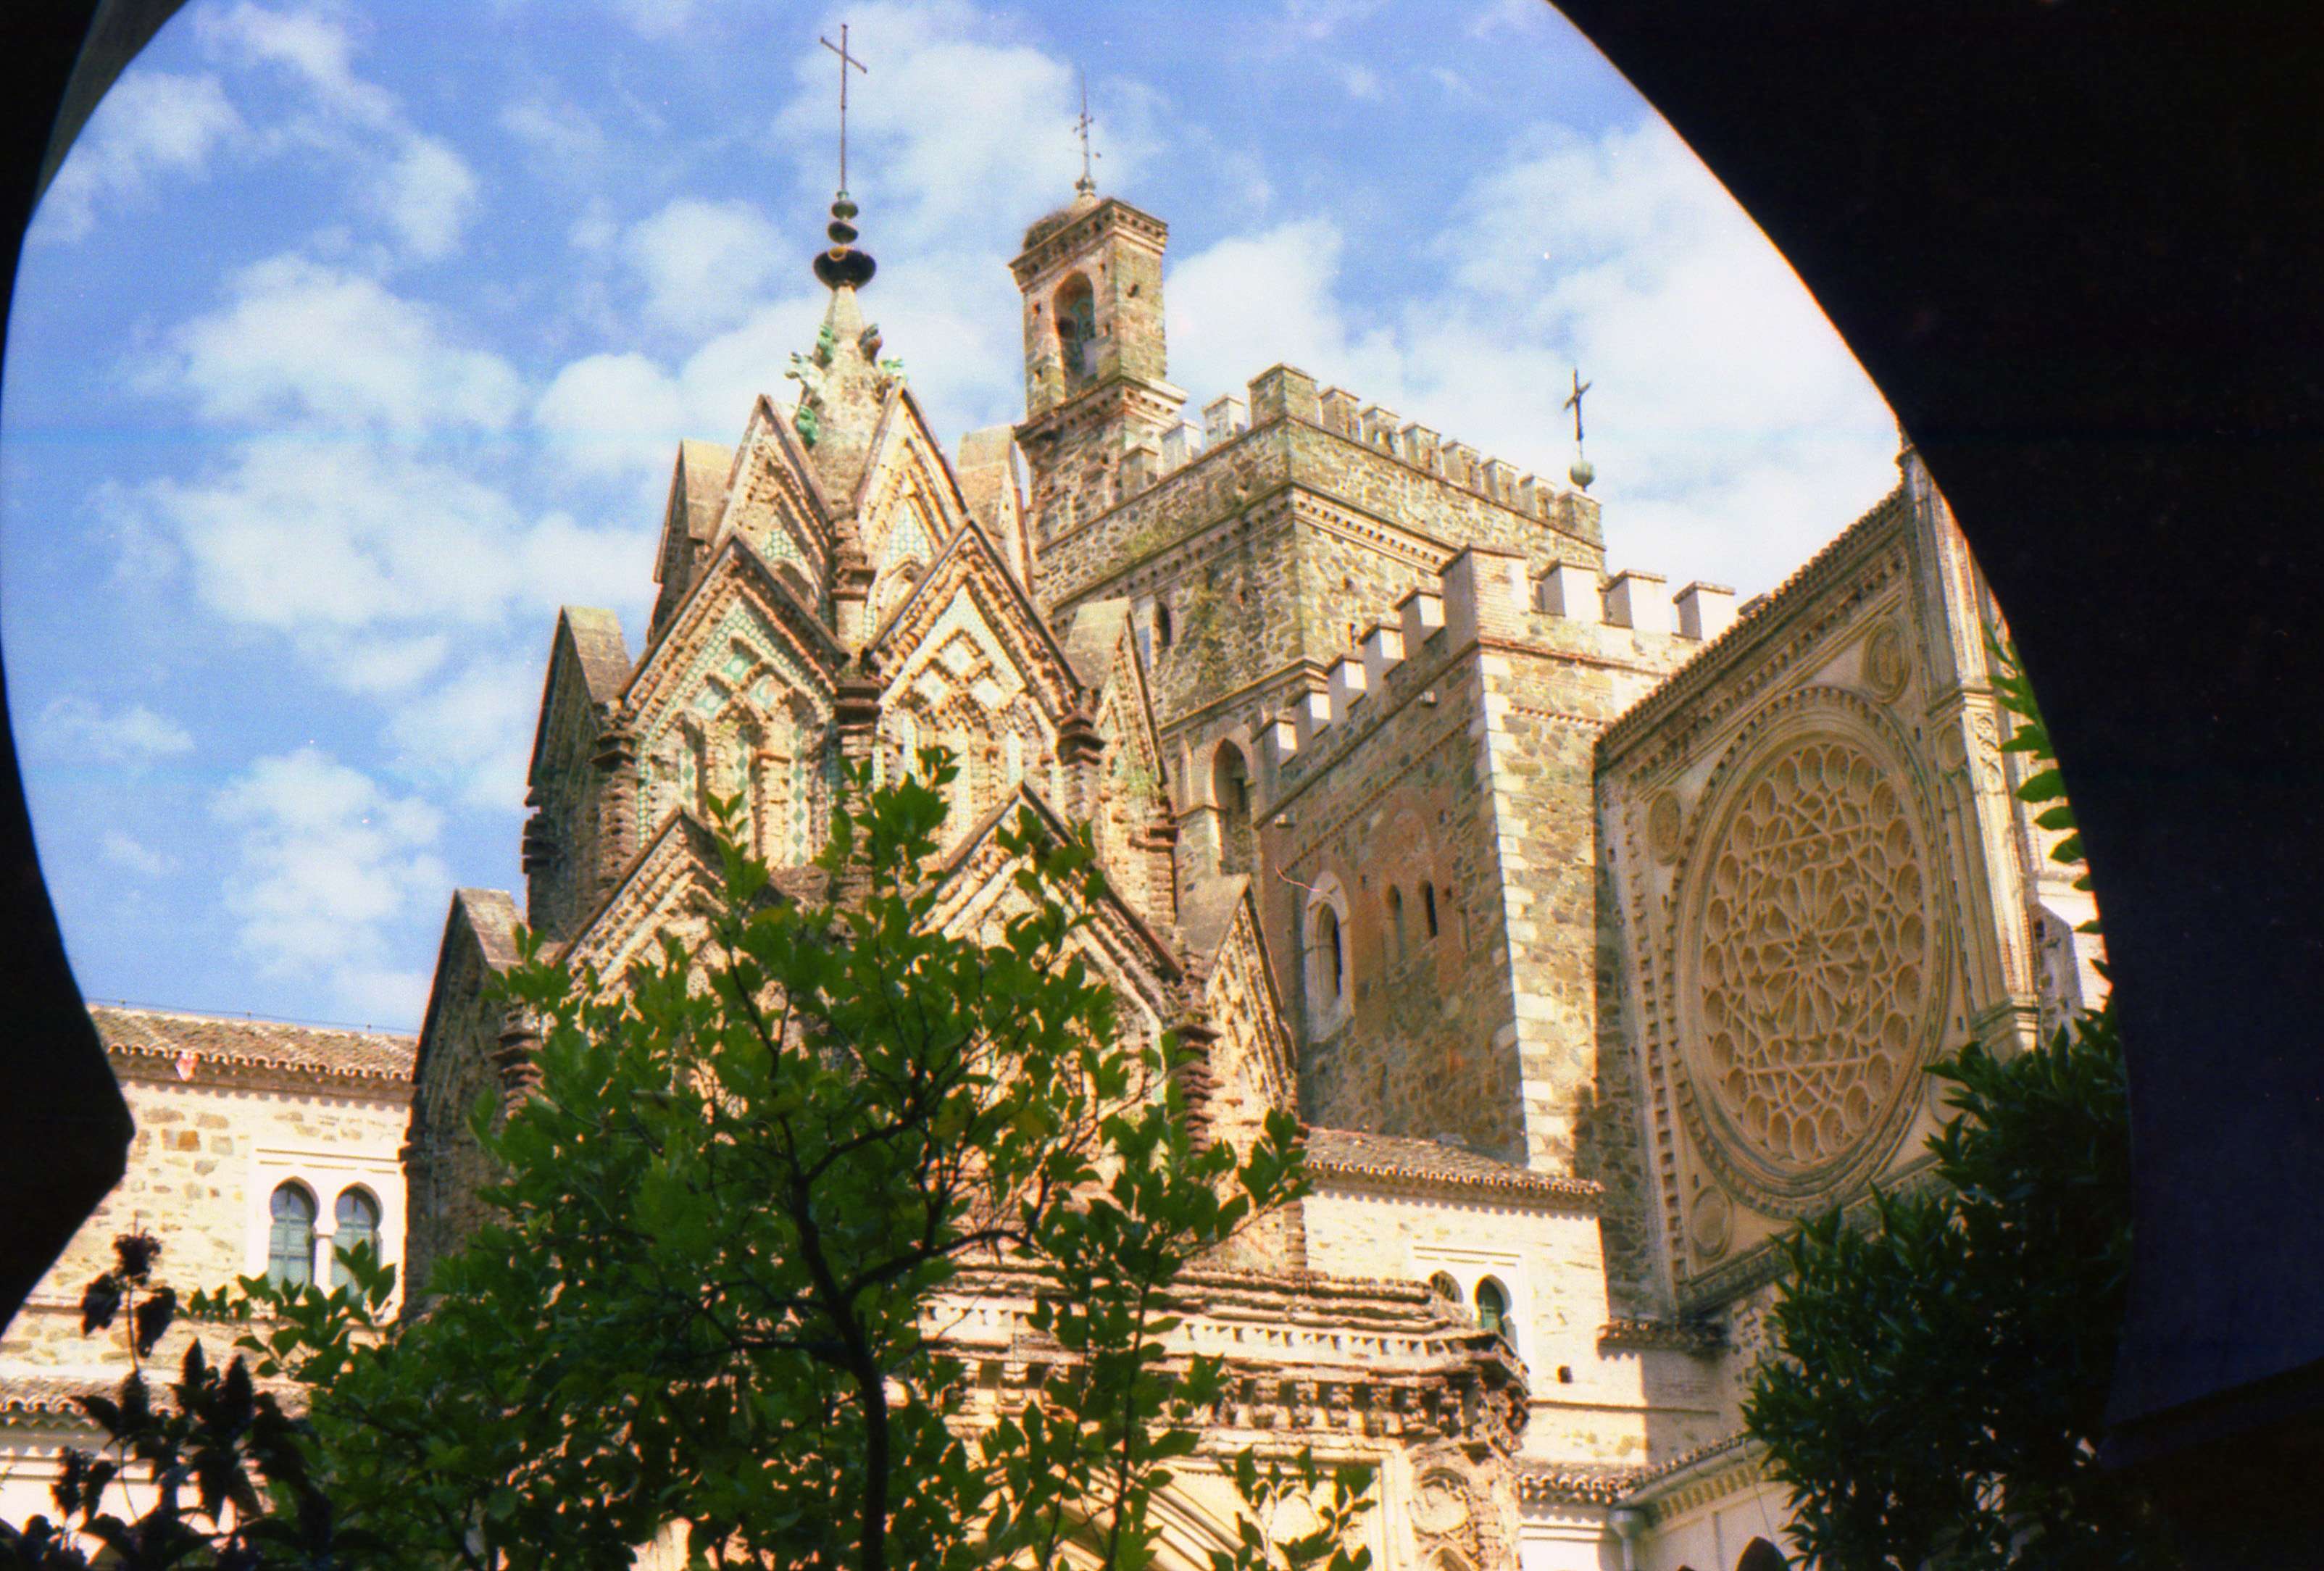 Monasterio de Guadalupe, Oropesa y Lagartera - Excursiones desde Madrid (1)